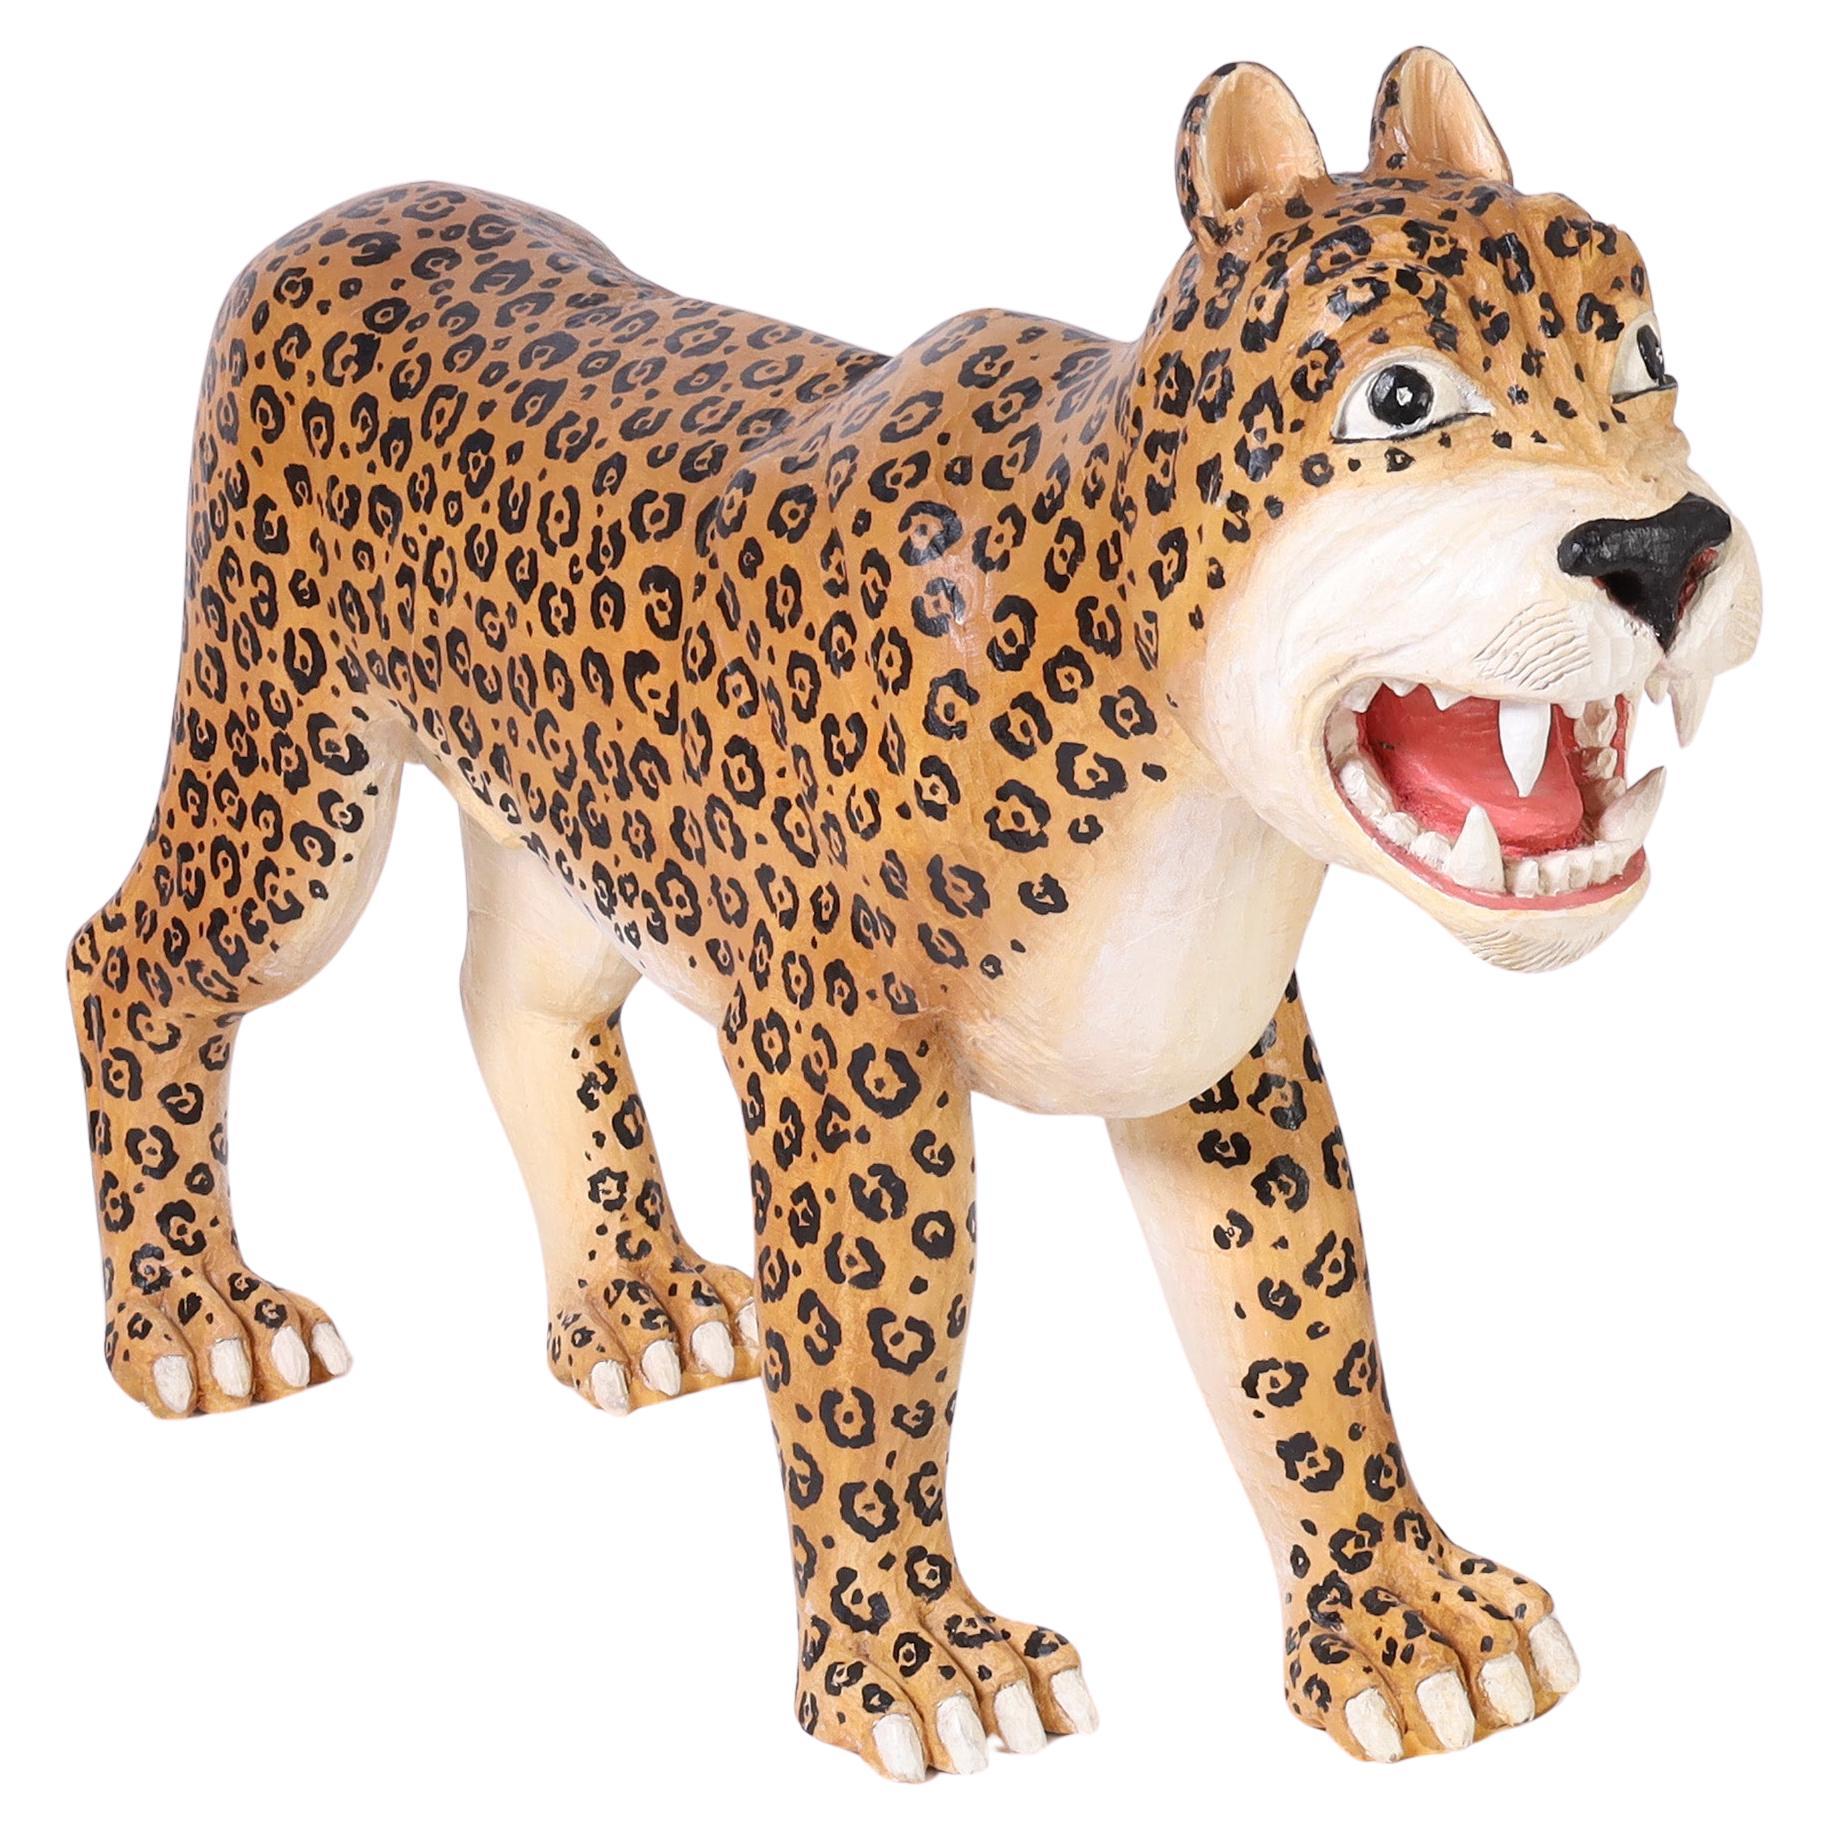 Geschnitzter und bemalter Jaguar oder große Katze aus Holz